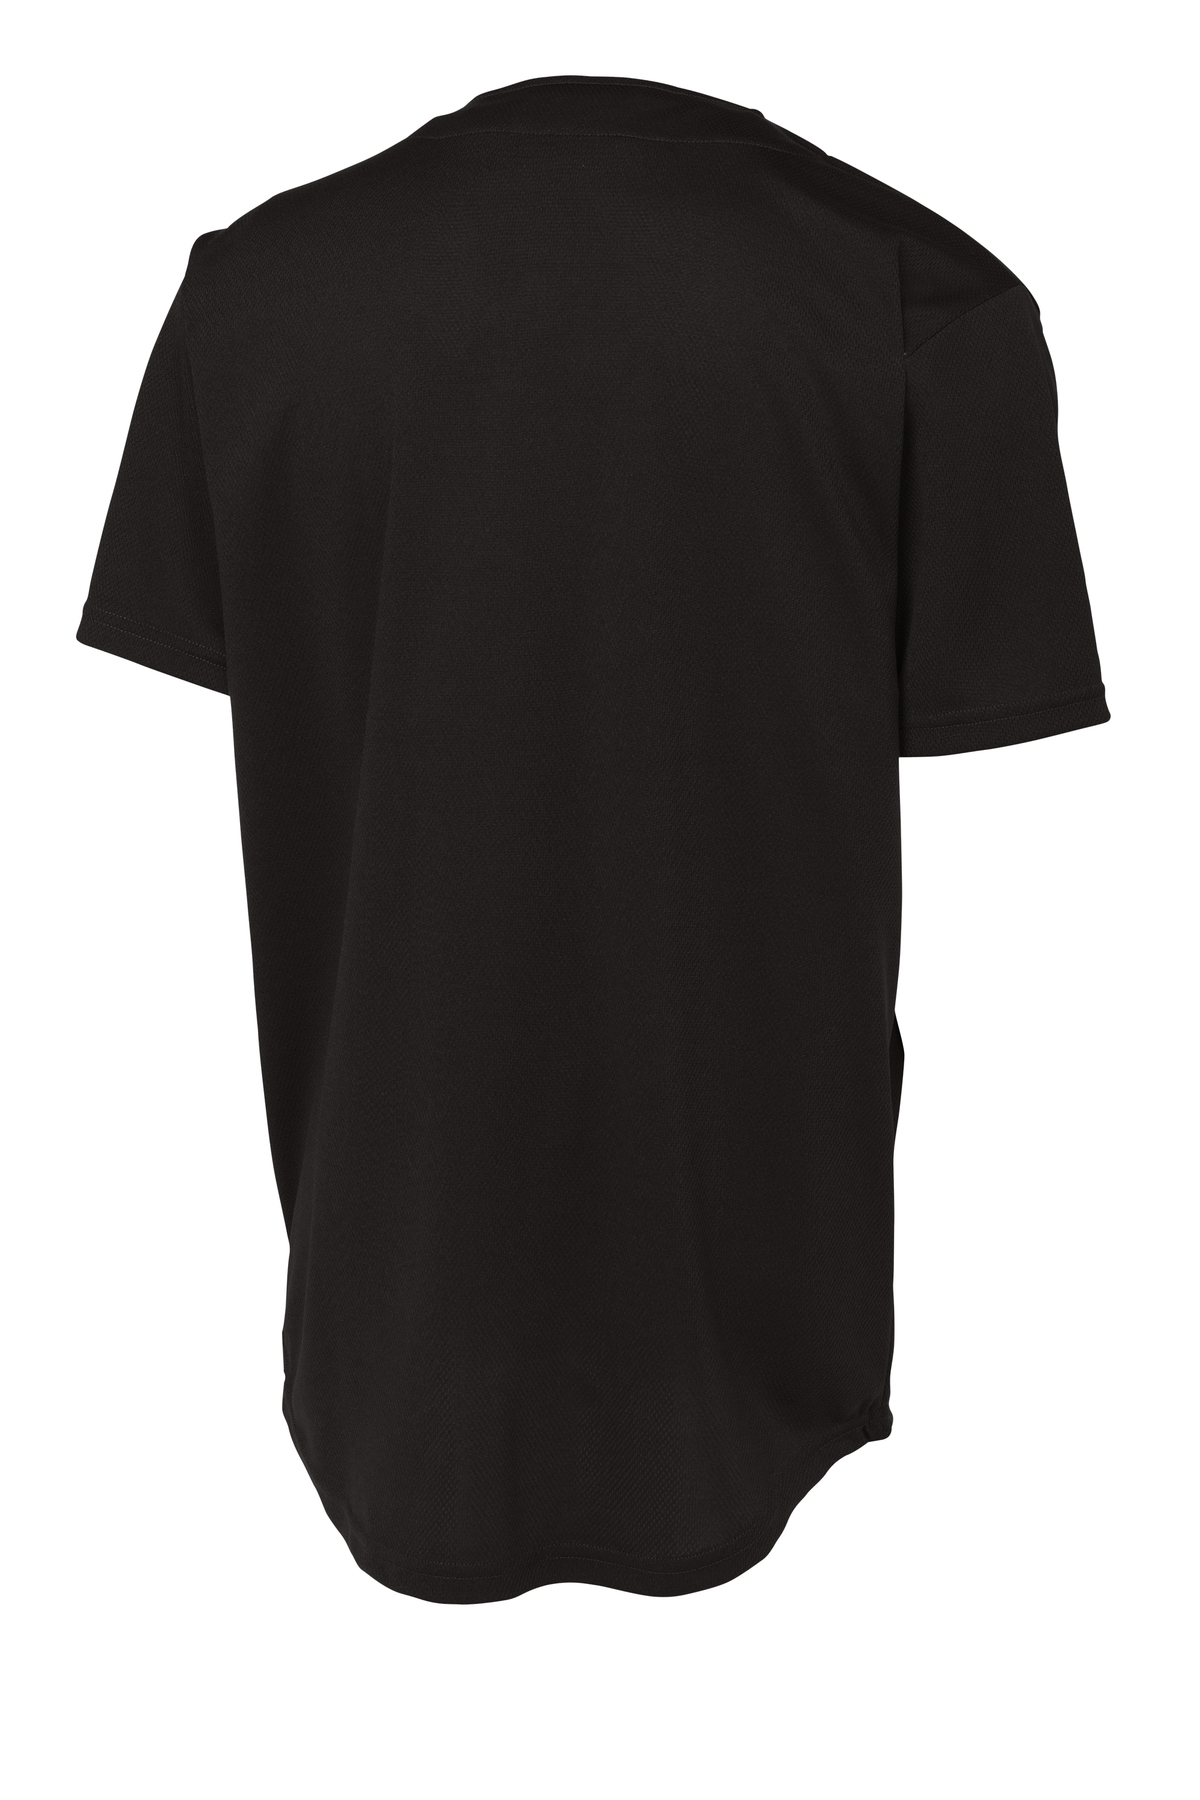 Sport-Tek Mens Dri-Fit Tough Mesh Henley Full Button Baseball Jersey Shirt ST220 